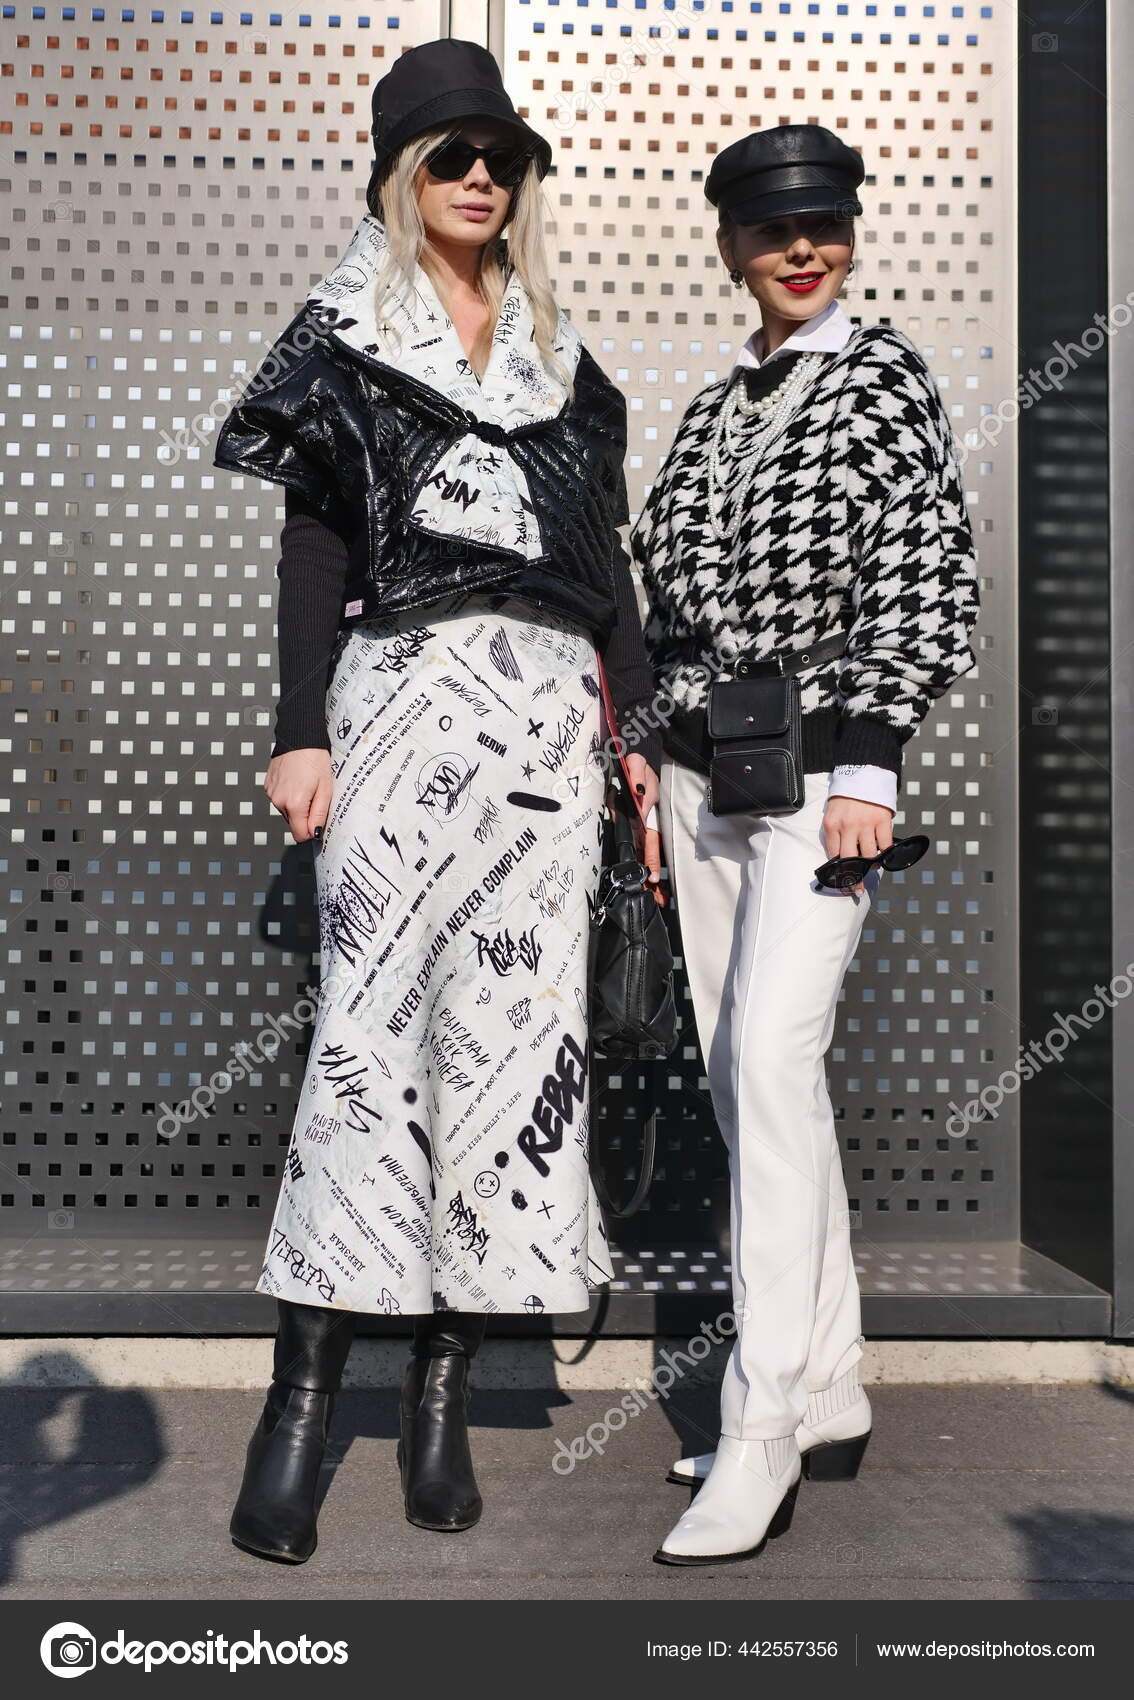 Fashion Bloggers Street Style Outfits Gucci Fashion Show Milan Fashion –  Stock Editorial Photo © Lukefotografo #442557356